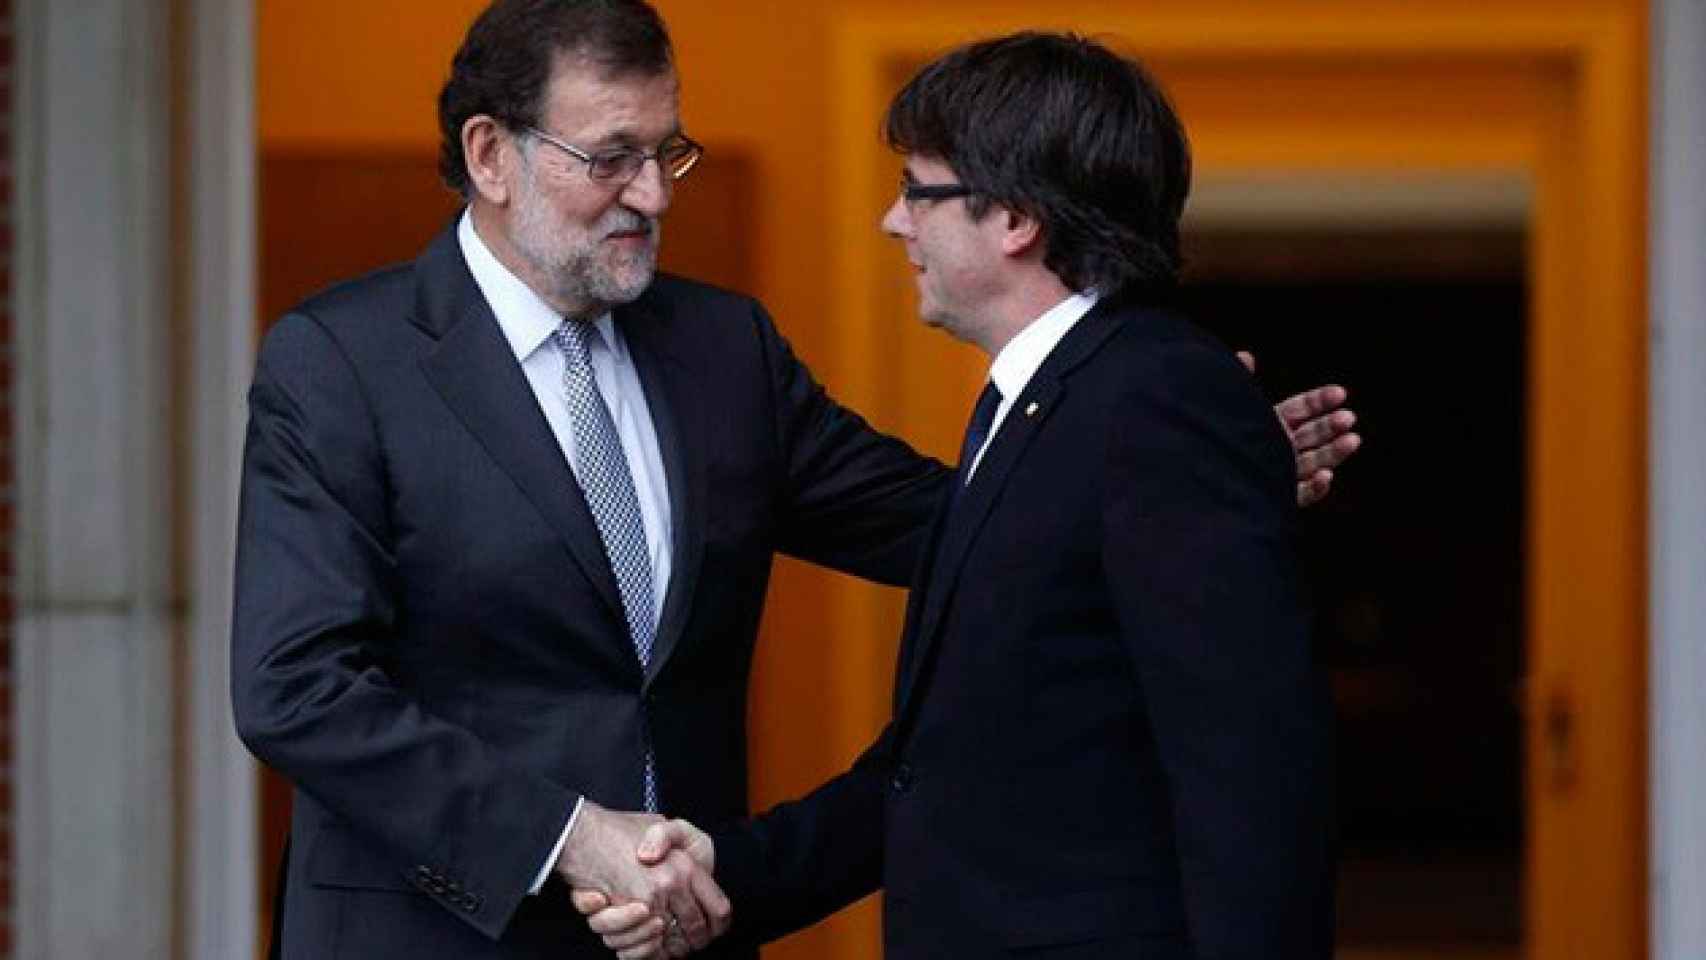 El presidente del Gobierno, Mariano Rajoy, saluda a el presidente de Cataluña, Carles Puigdemont, en una imagen de archivo / CG